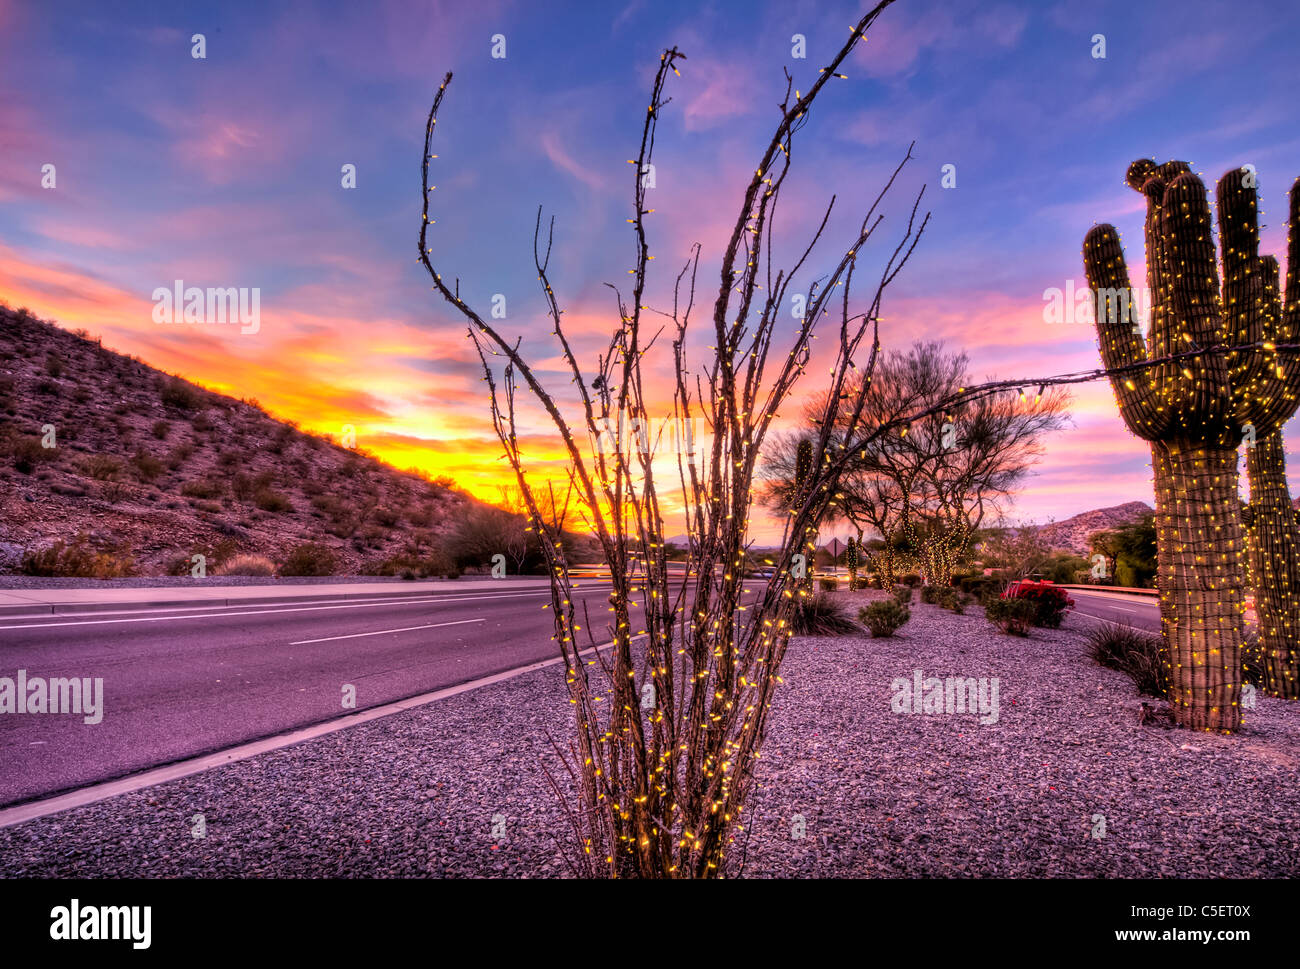 Diese riesigen Saguaro-Kaktus bedeckt gewesen in Weihnachtsbeleuchtung für die Weihnachtszeit in Phoenix, AZ Stockfoto